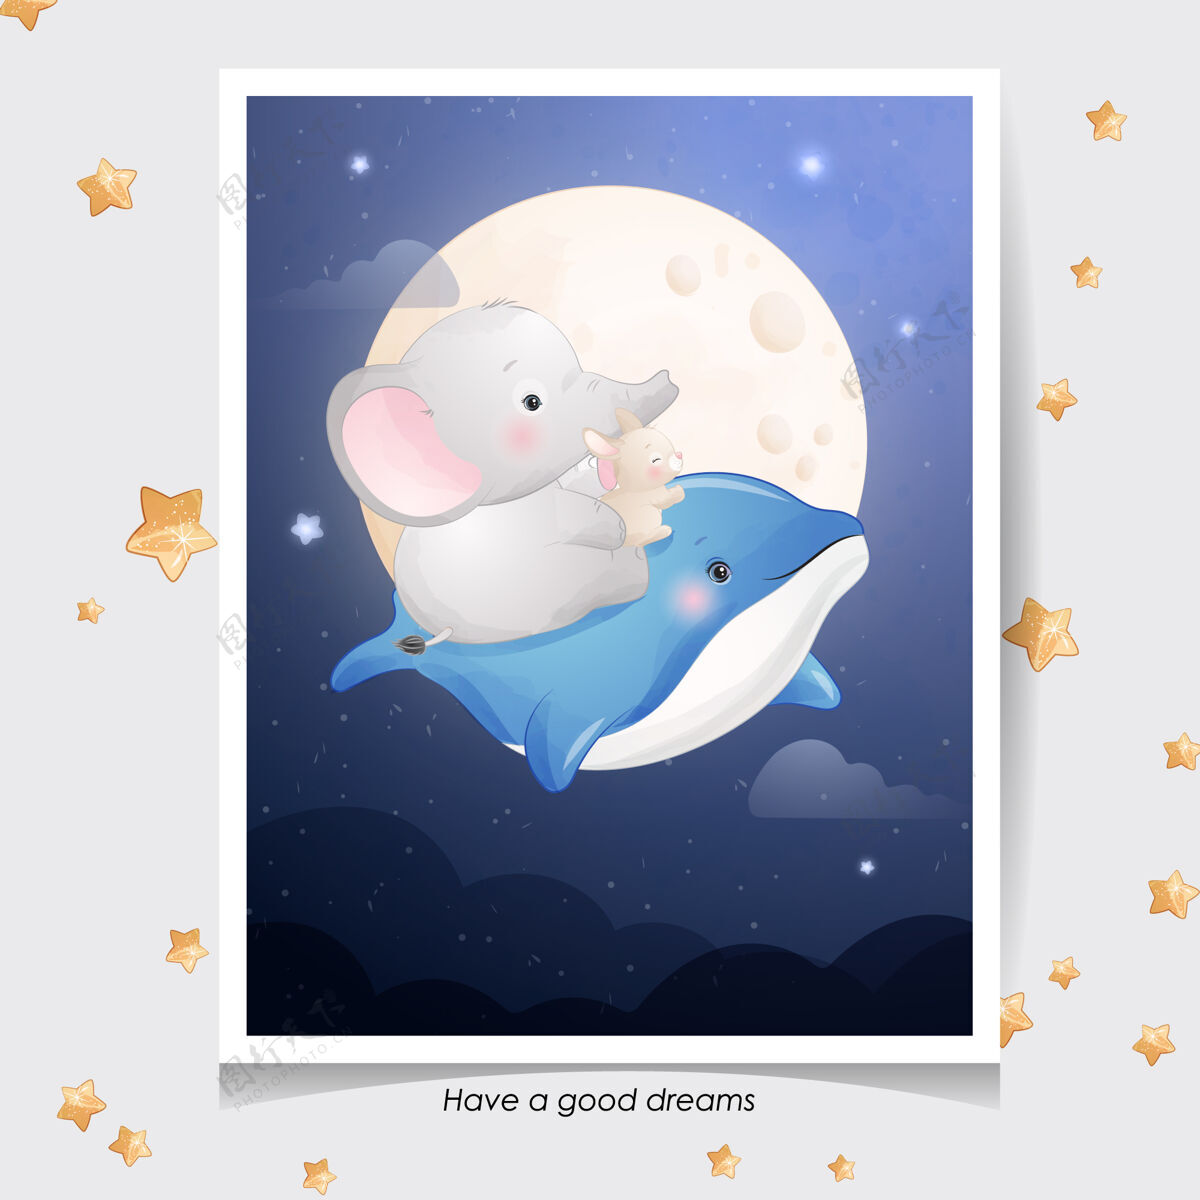 彩色可爱的涂鸦大象和小兔子与水彩插图星星婴儿淋浴夜晚